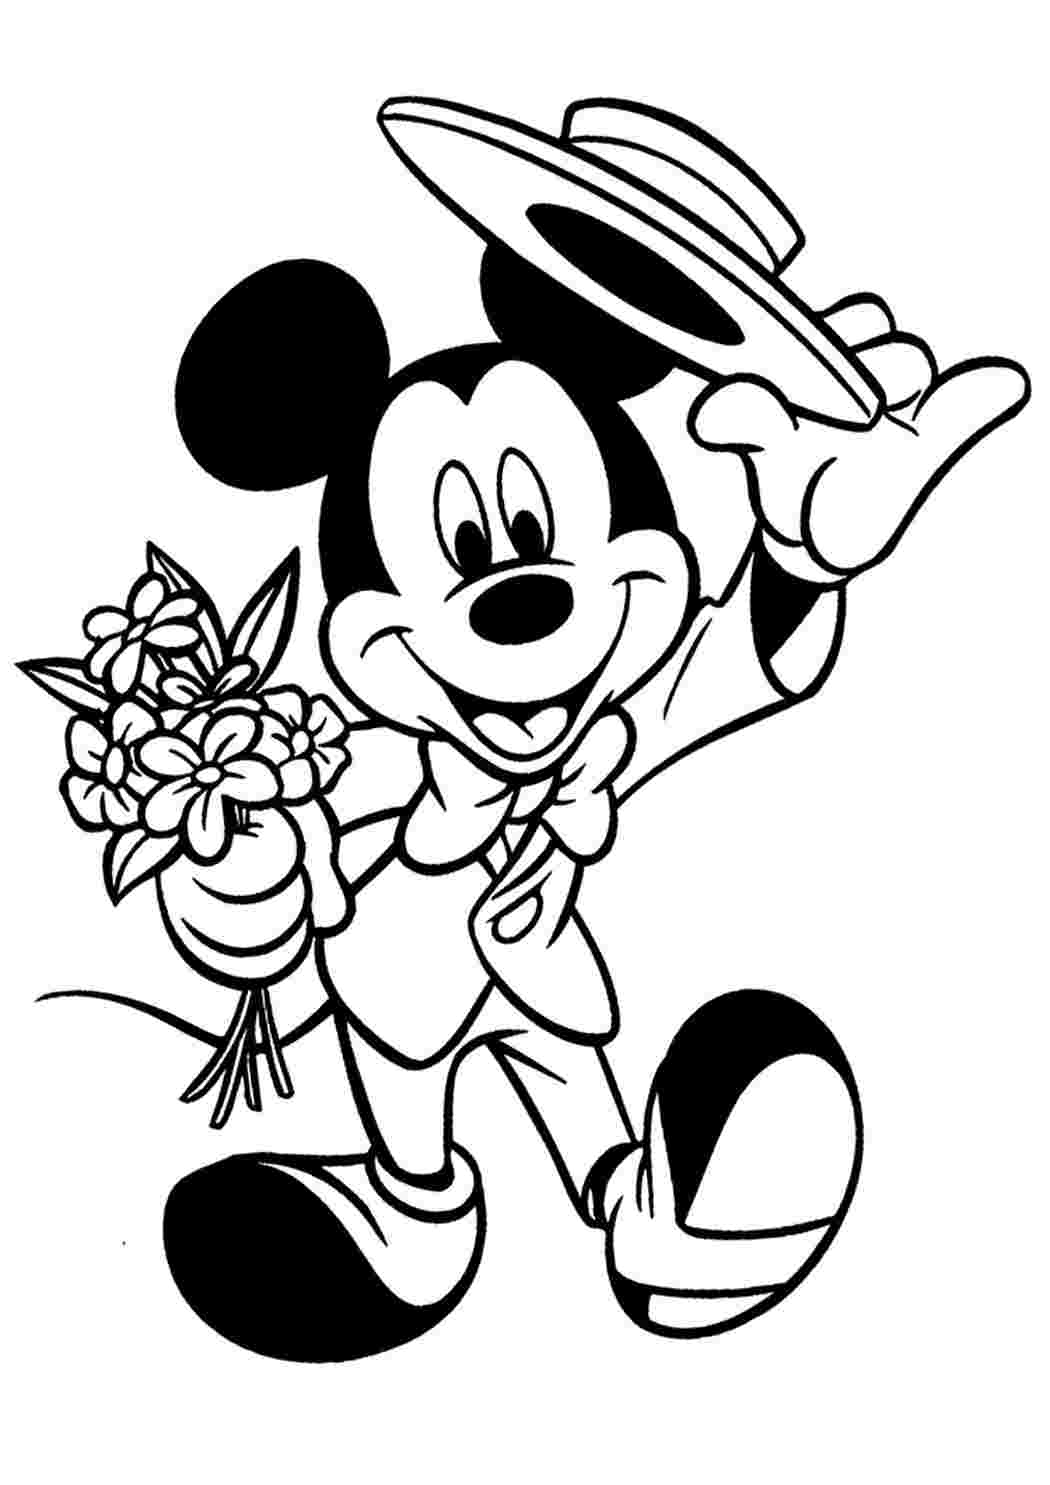 Раскраски героев диснеевских мультиков: Мини Маус (Mini Mouse)